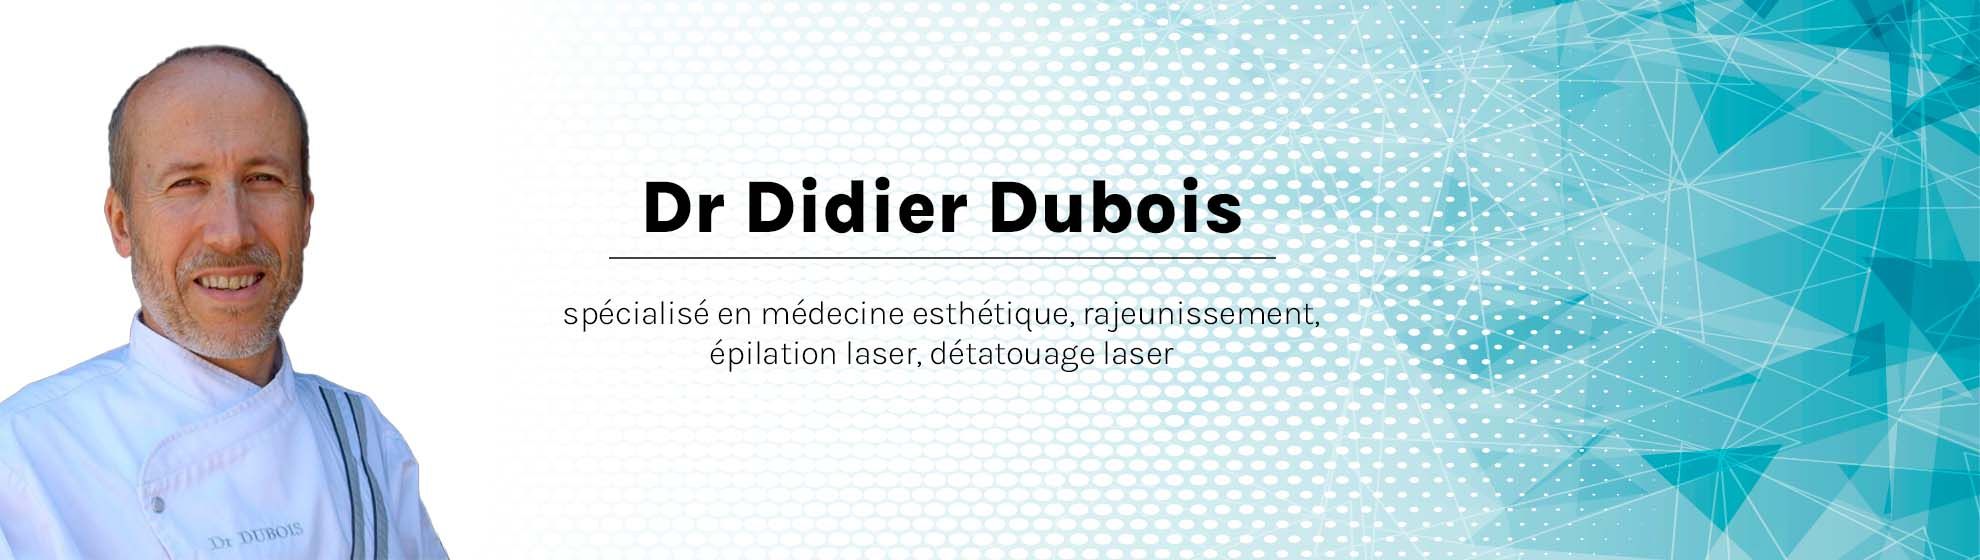 Dr Didier Dubois